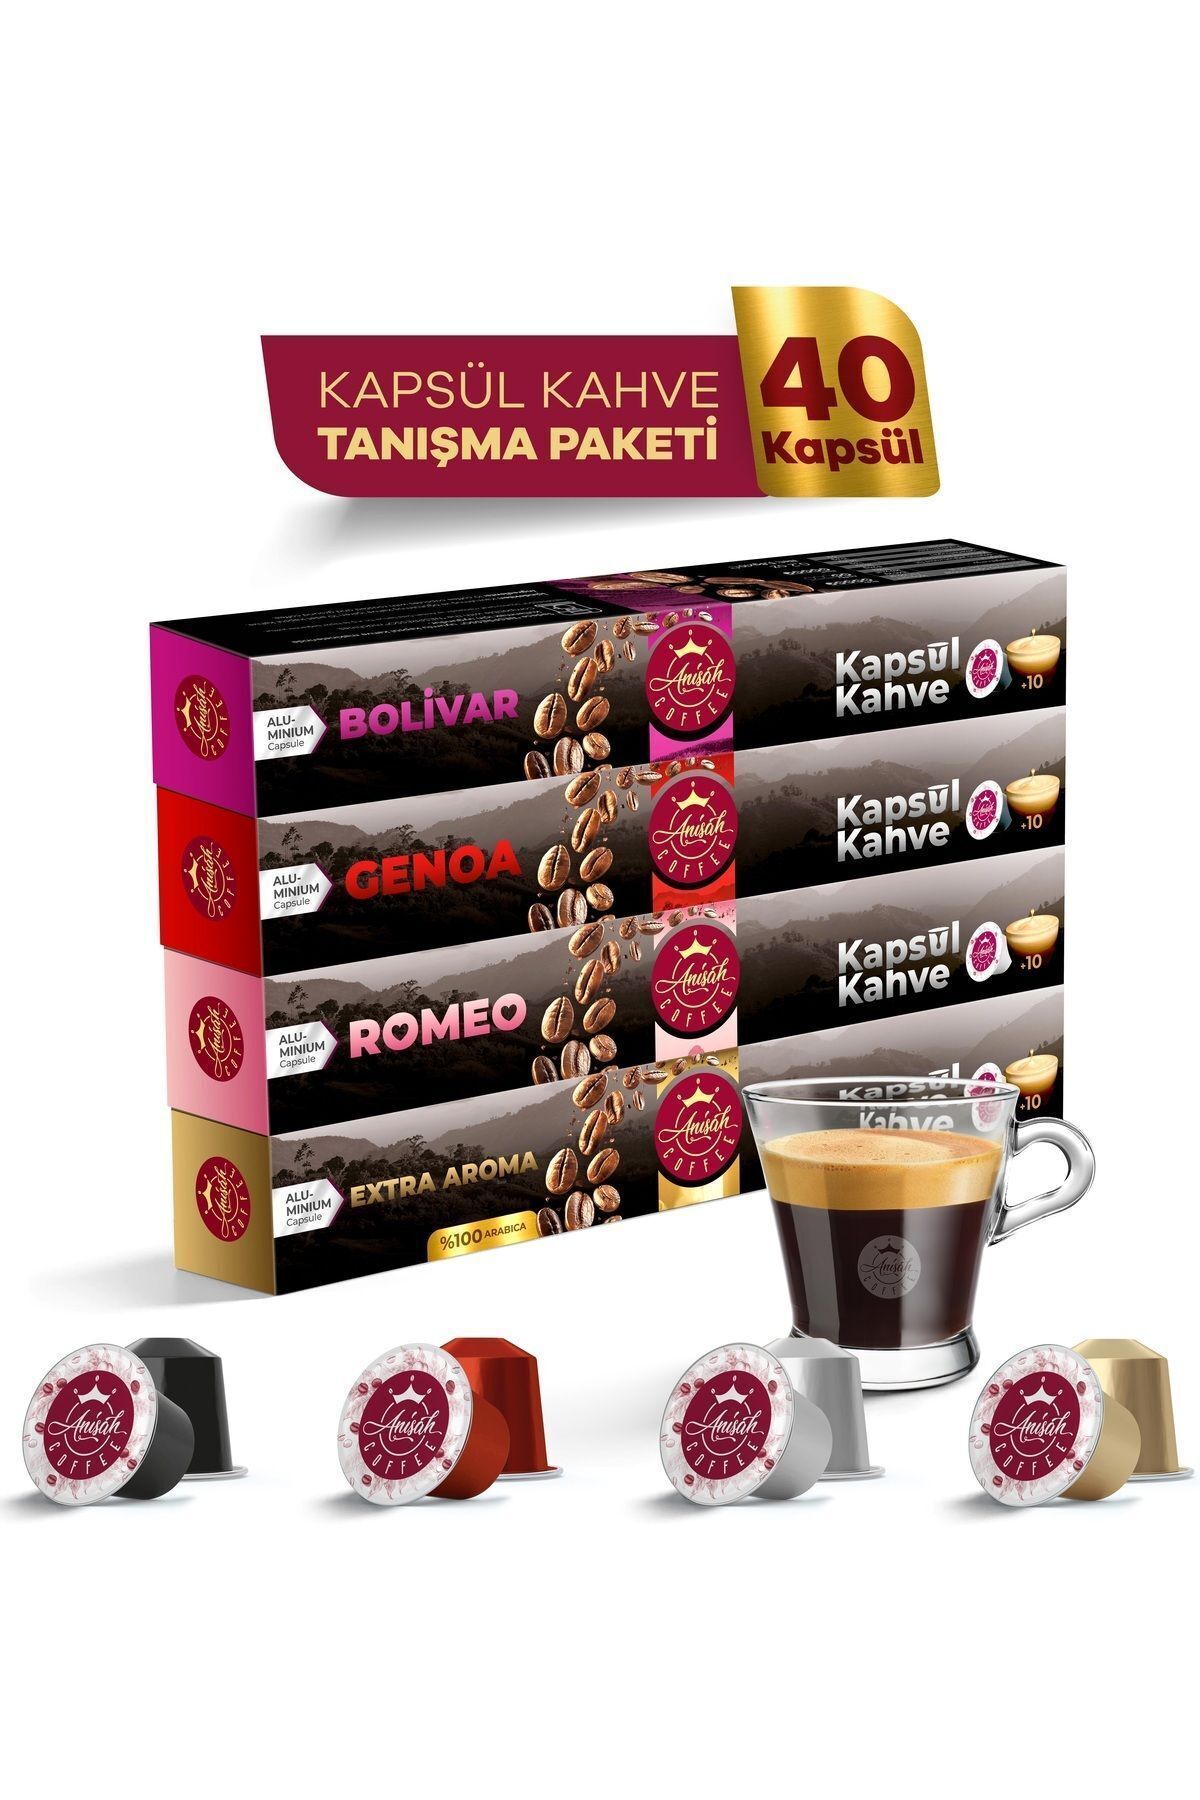 Anisah Coffee Kapsül Kahve Seti 40 Adet Bolivar Genoa Romeo ve Extra Aroma